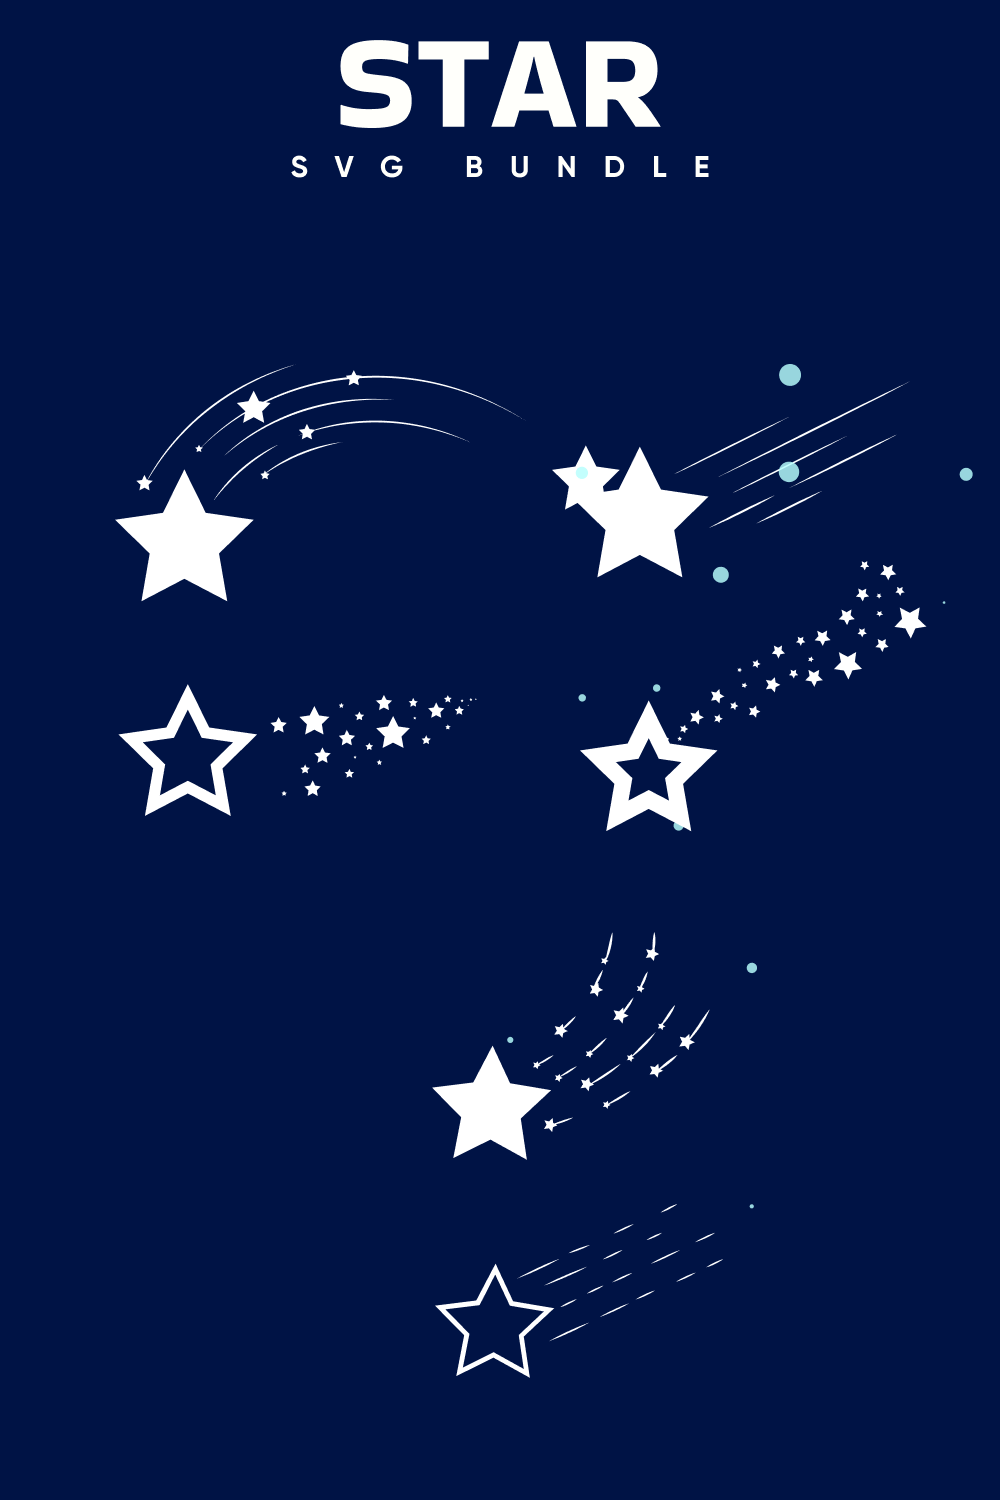 Dark blue background with white stars.